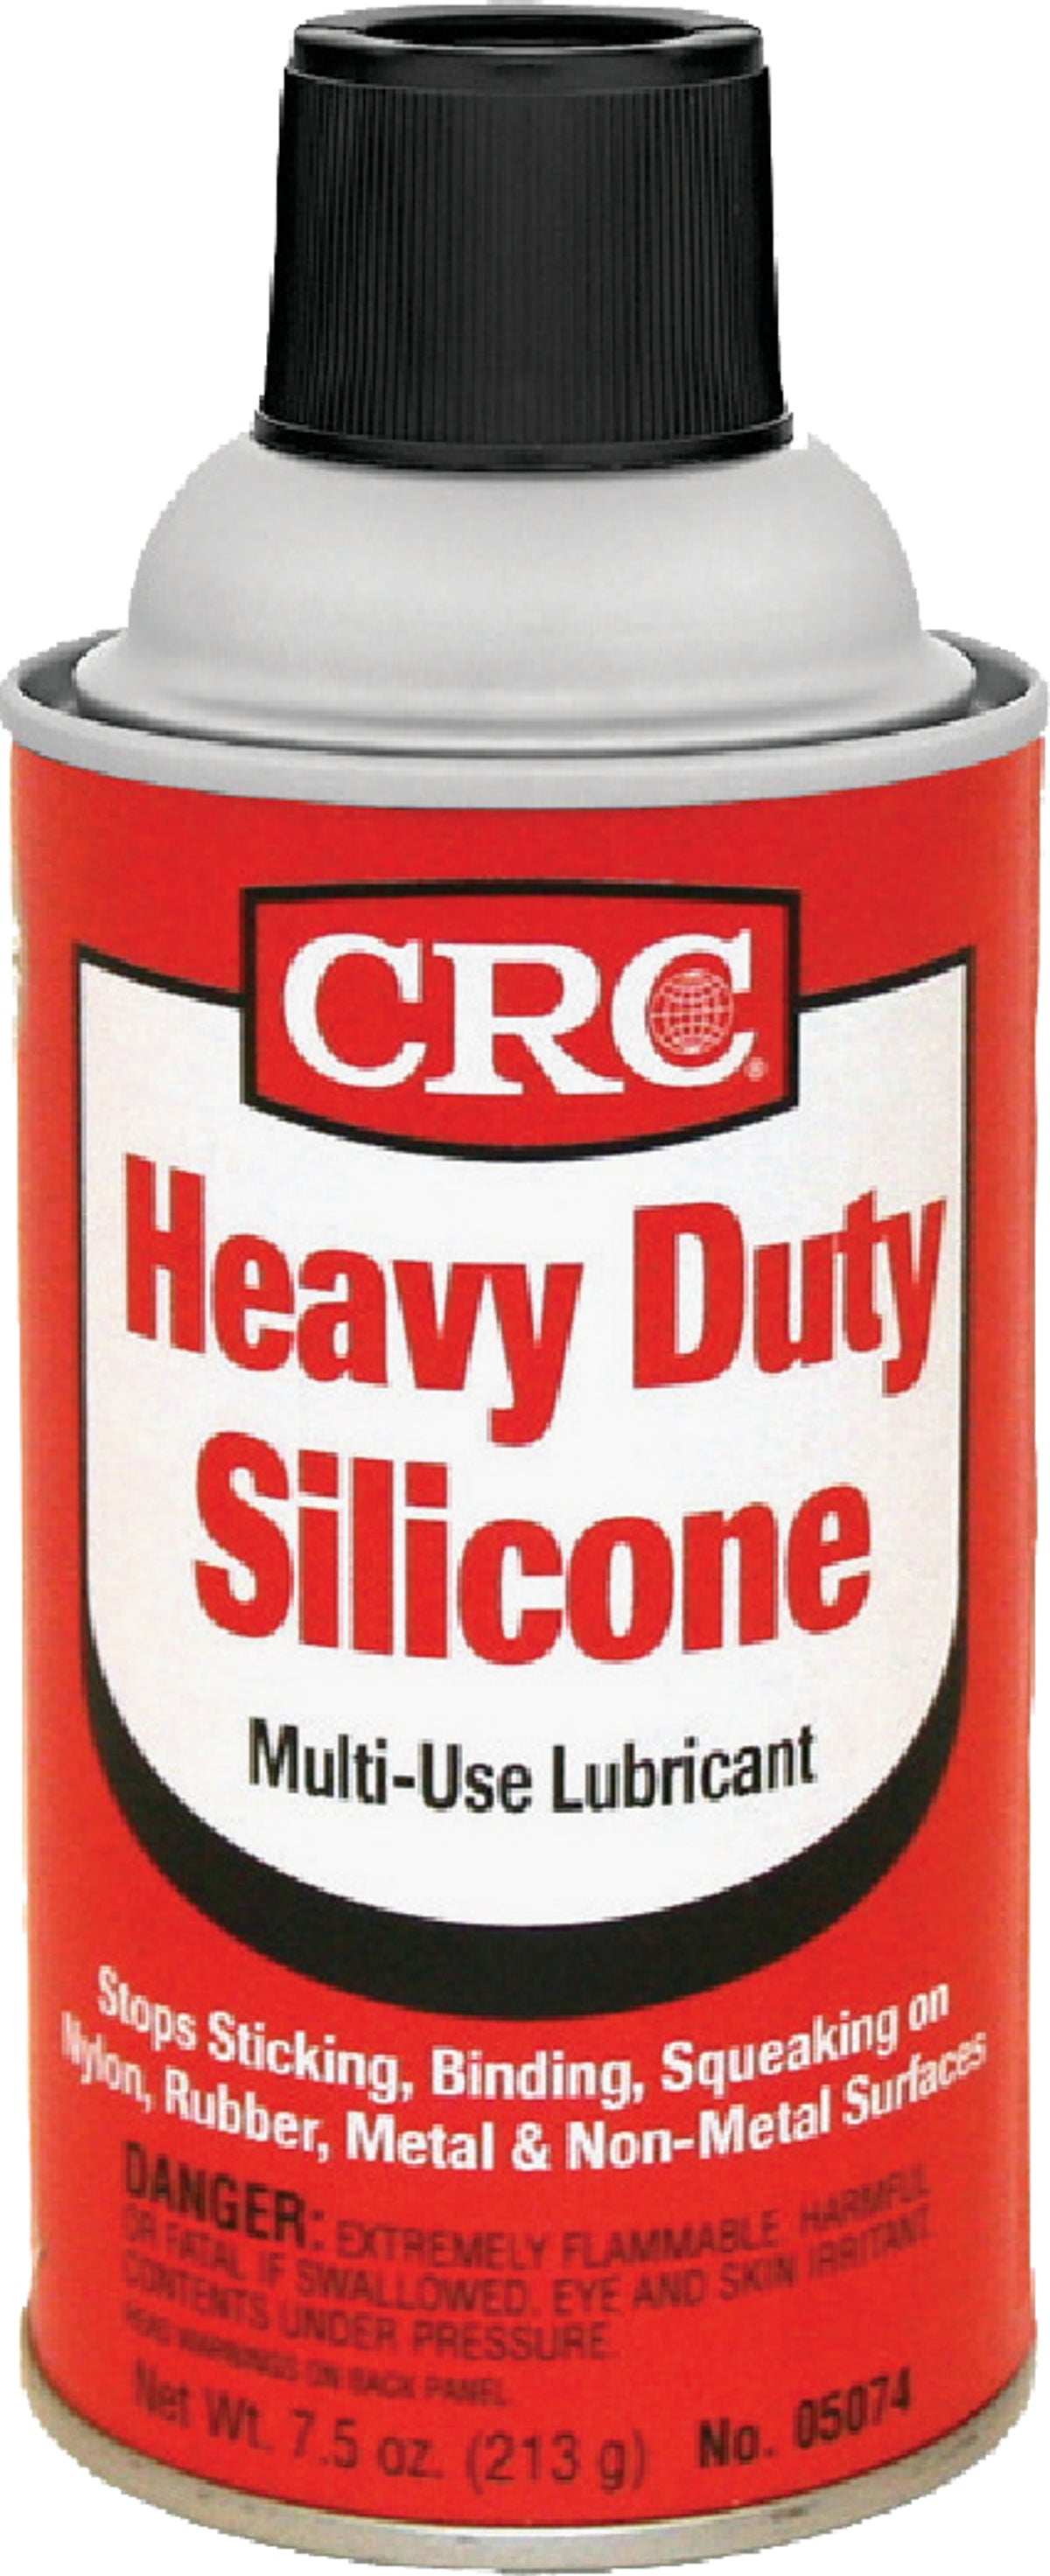 CRC 05074 Heavy Duty Silicone Lubricant, 7.5 oz.